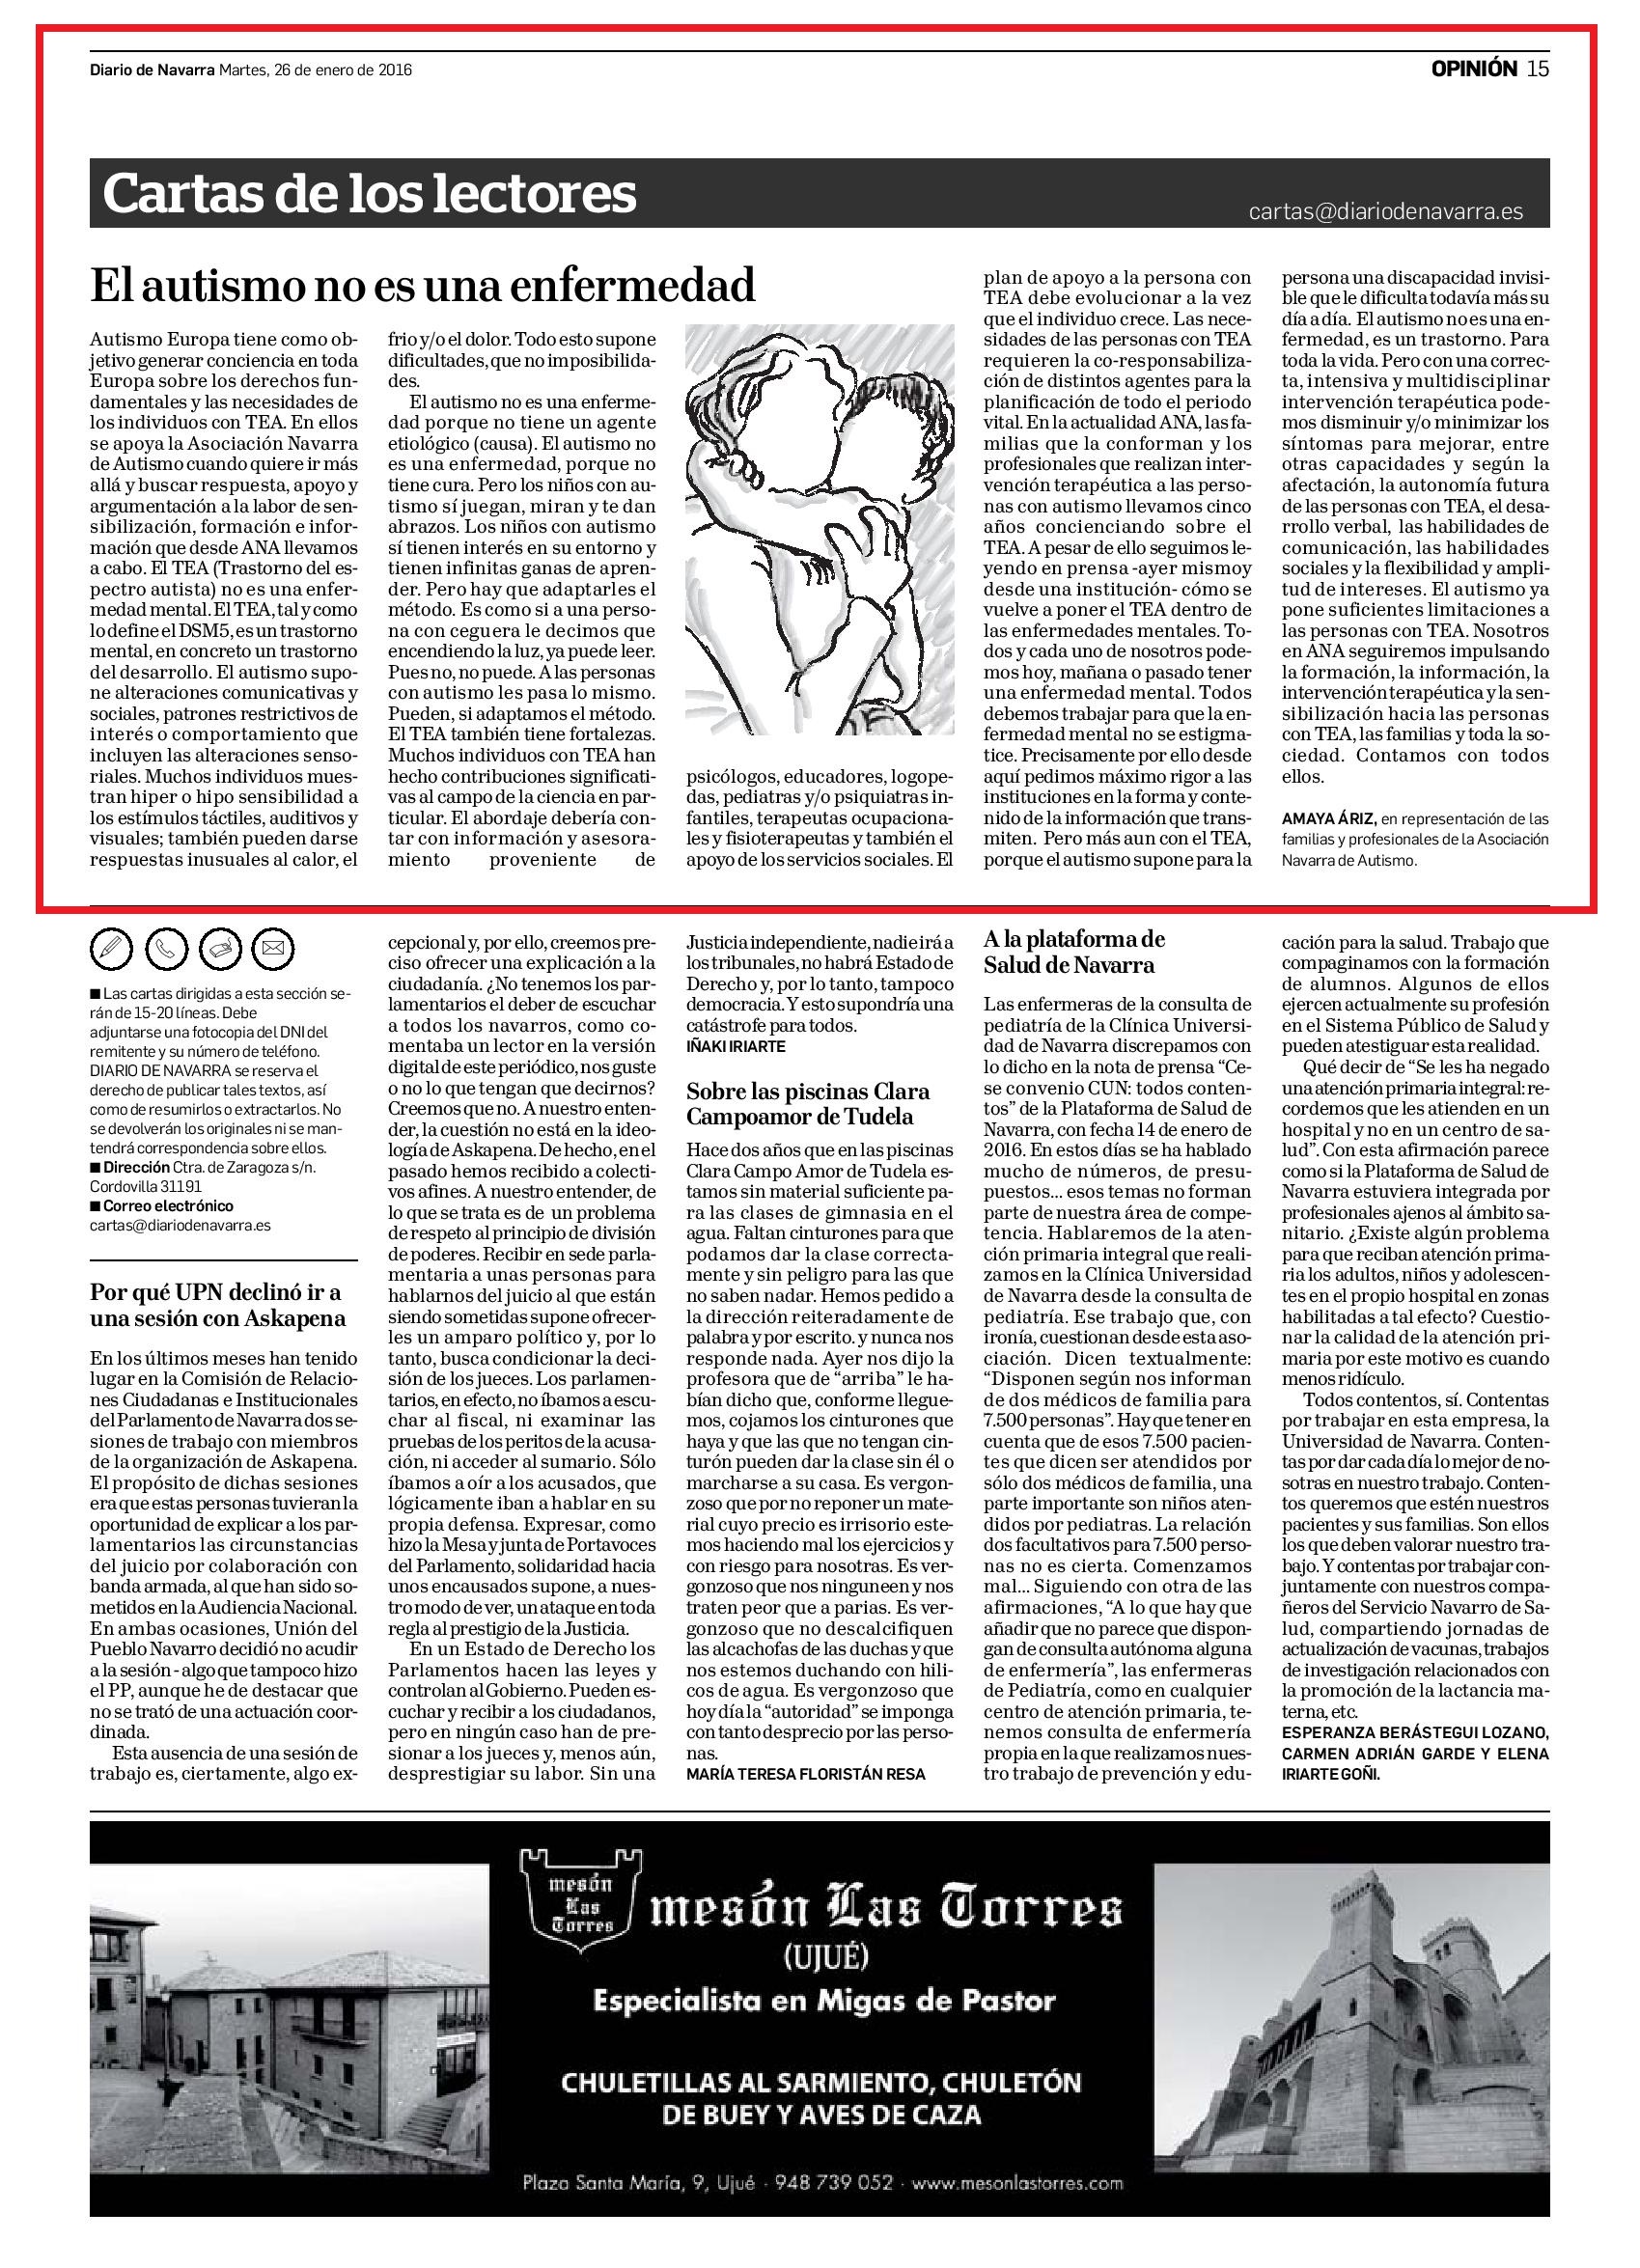 20160126 - Diario de Navarra - Opinión - pag 15-page-001.